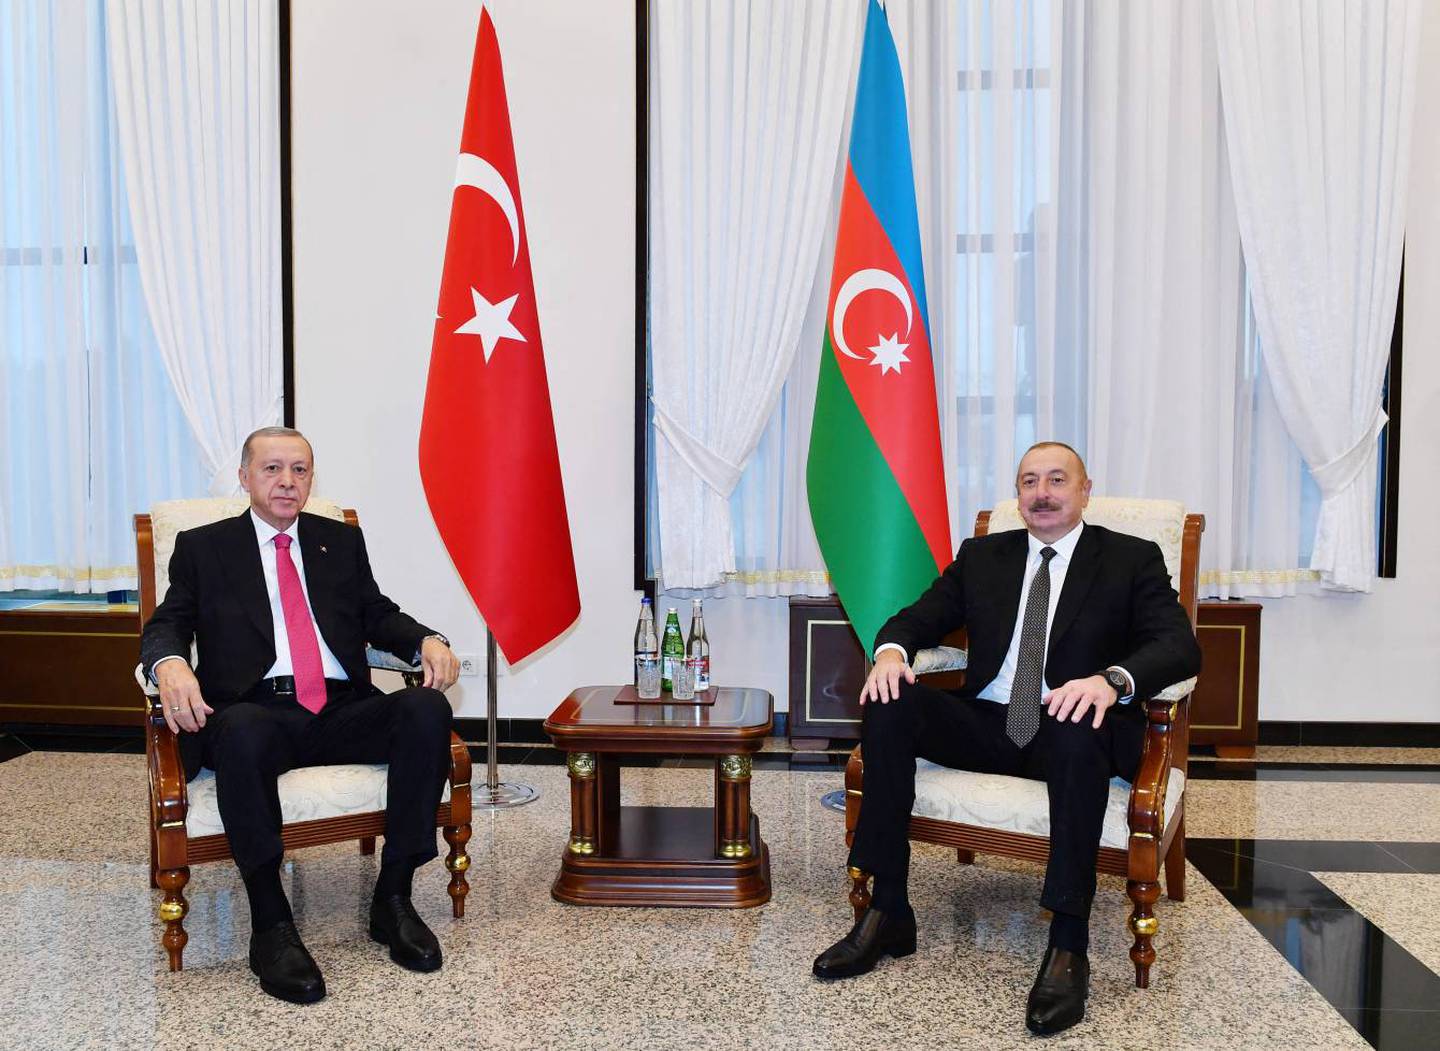 El presidente turco, Recep Tayyip Erdogan (izq.), reuniéndose con el presidente de Azerbaiyán, Ilham Aliyev, en el enclave de Nakhichevan, un territorio entre Armenia e Irán en la frontera con Turquía.